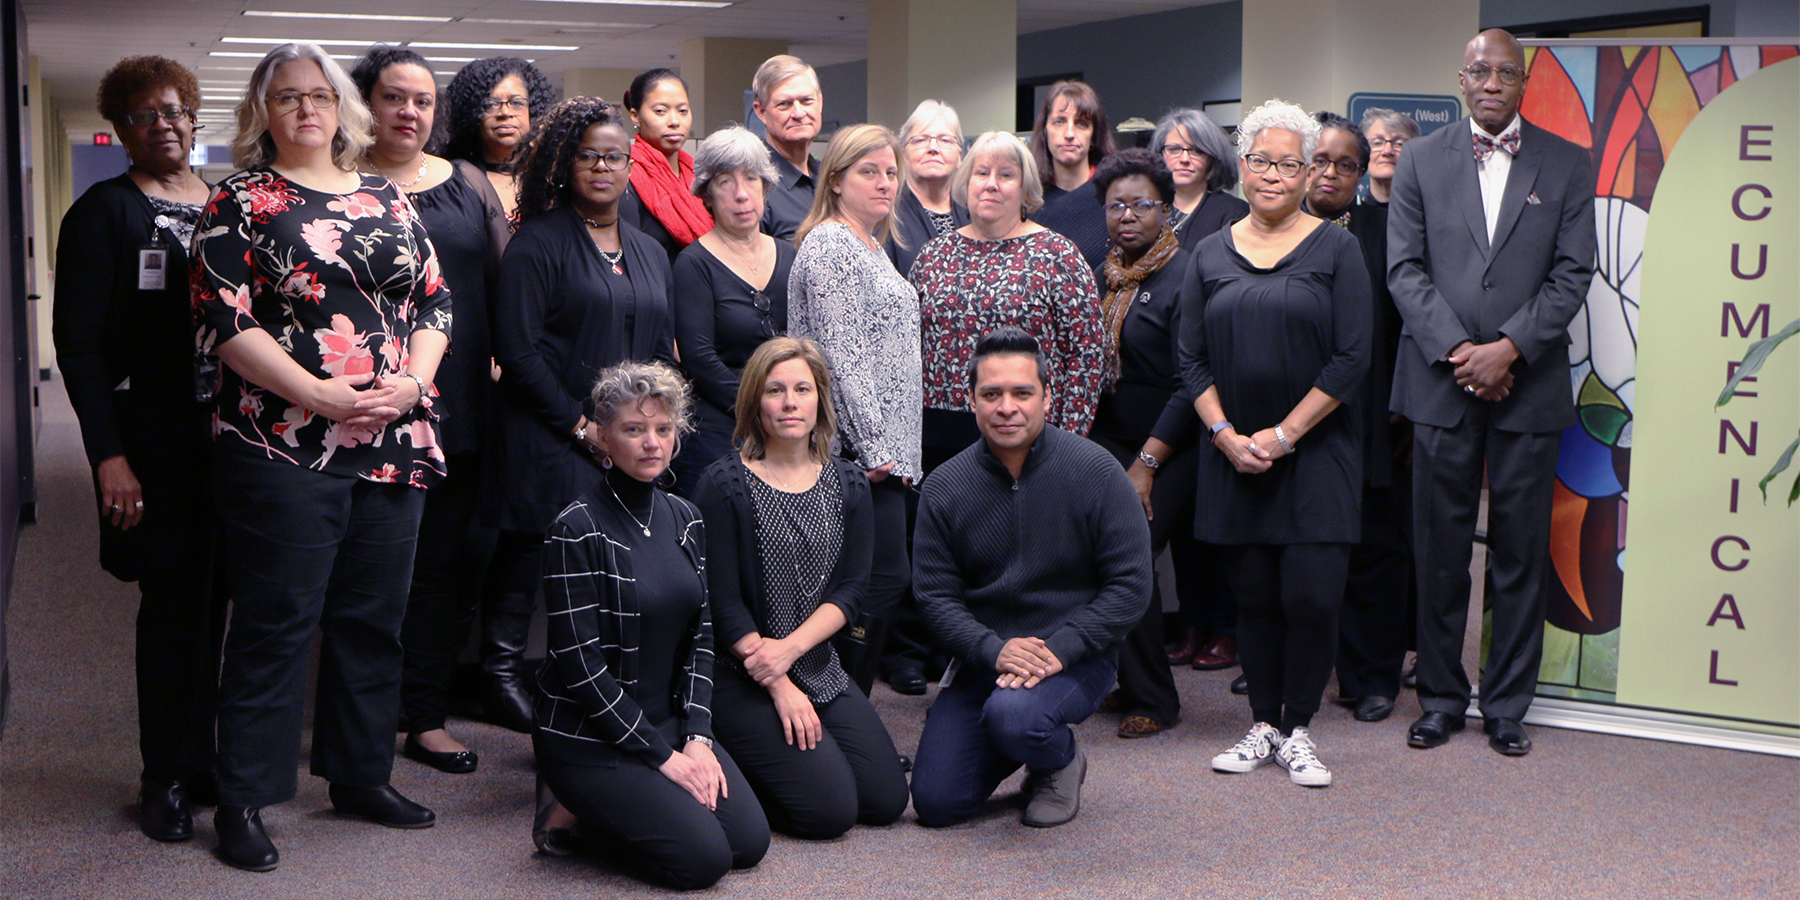 El personal de la Oficina de la Asamblea General se viste de negro para conmemorar la Campaña “Jueves de negro” para crear conciencia sobre el abuso de las mujeres. Foto por Randy Hobson.